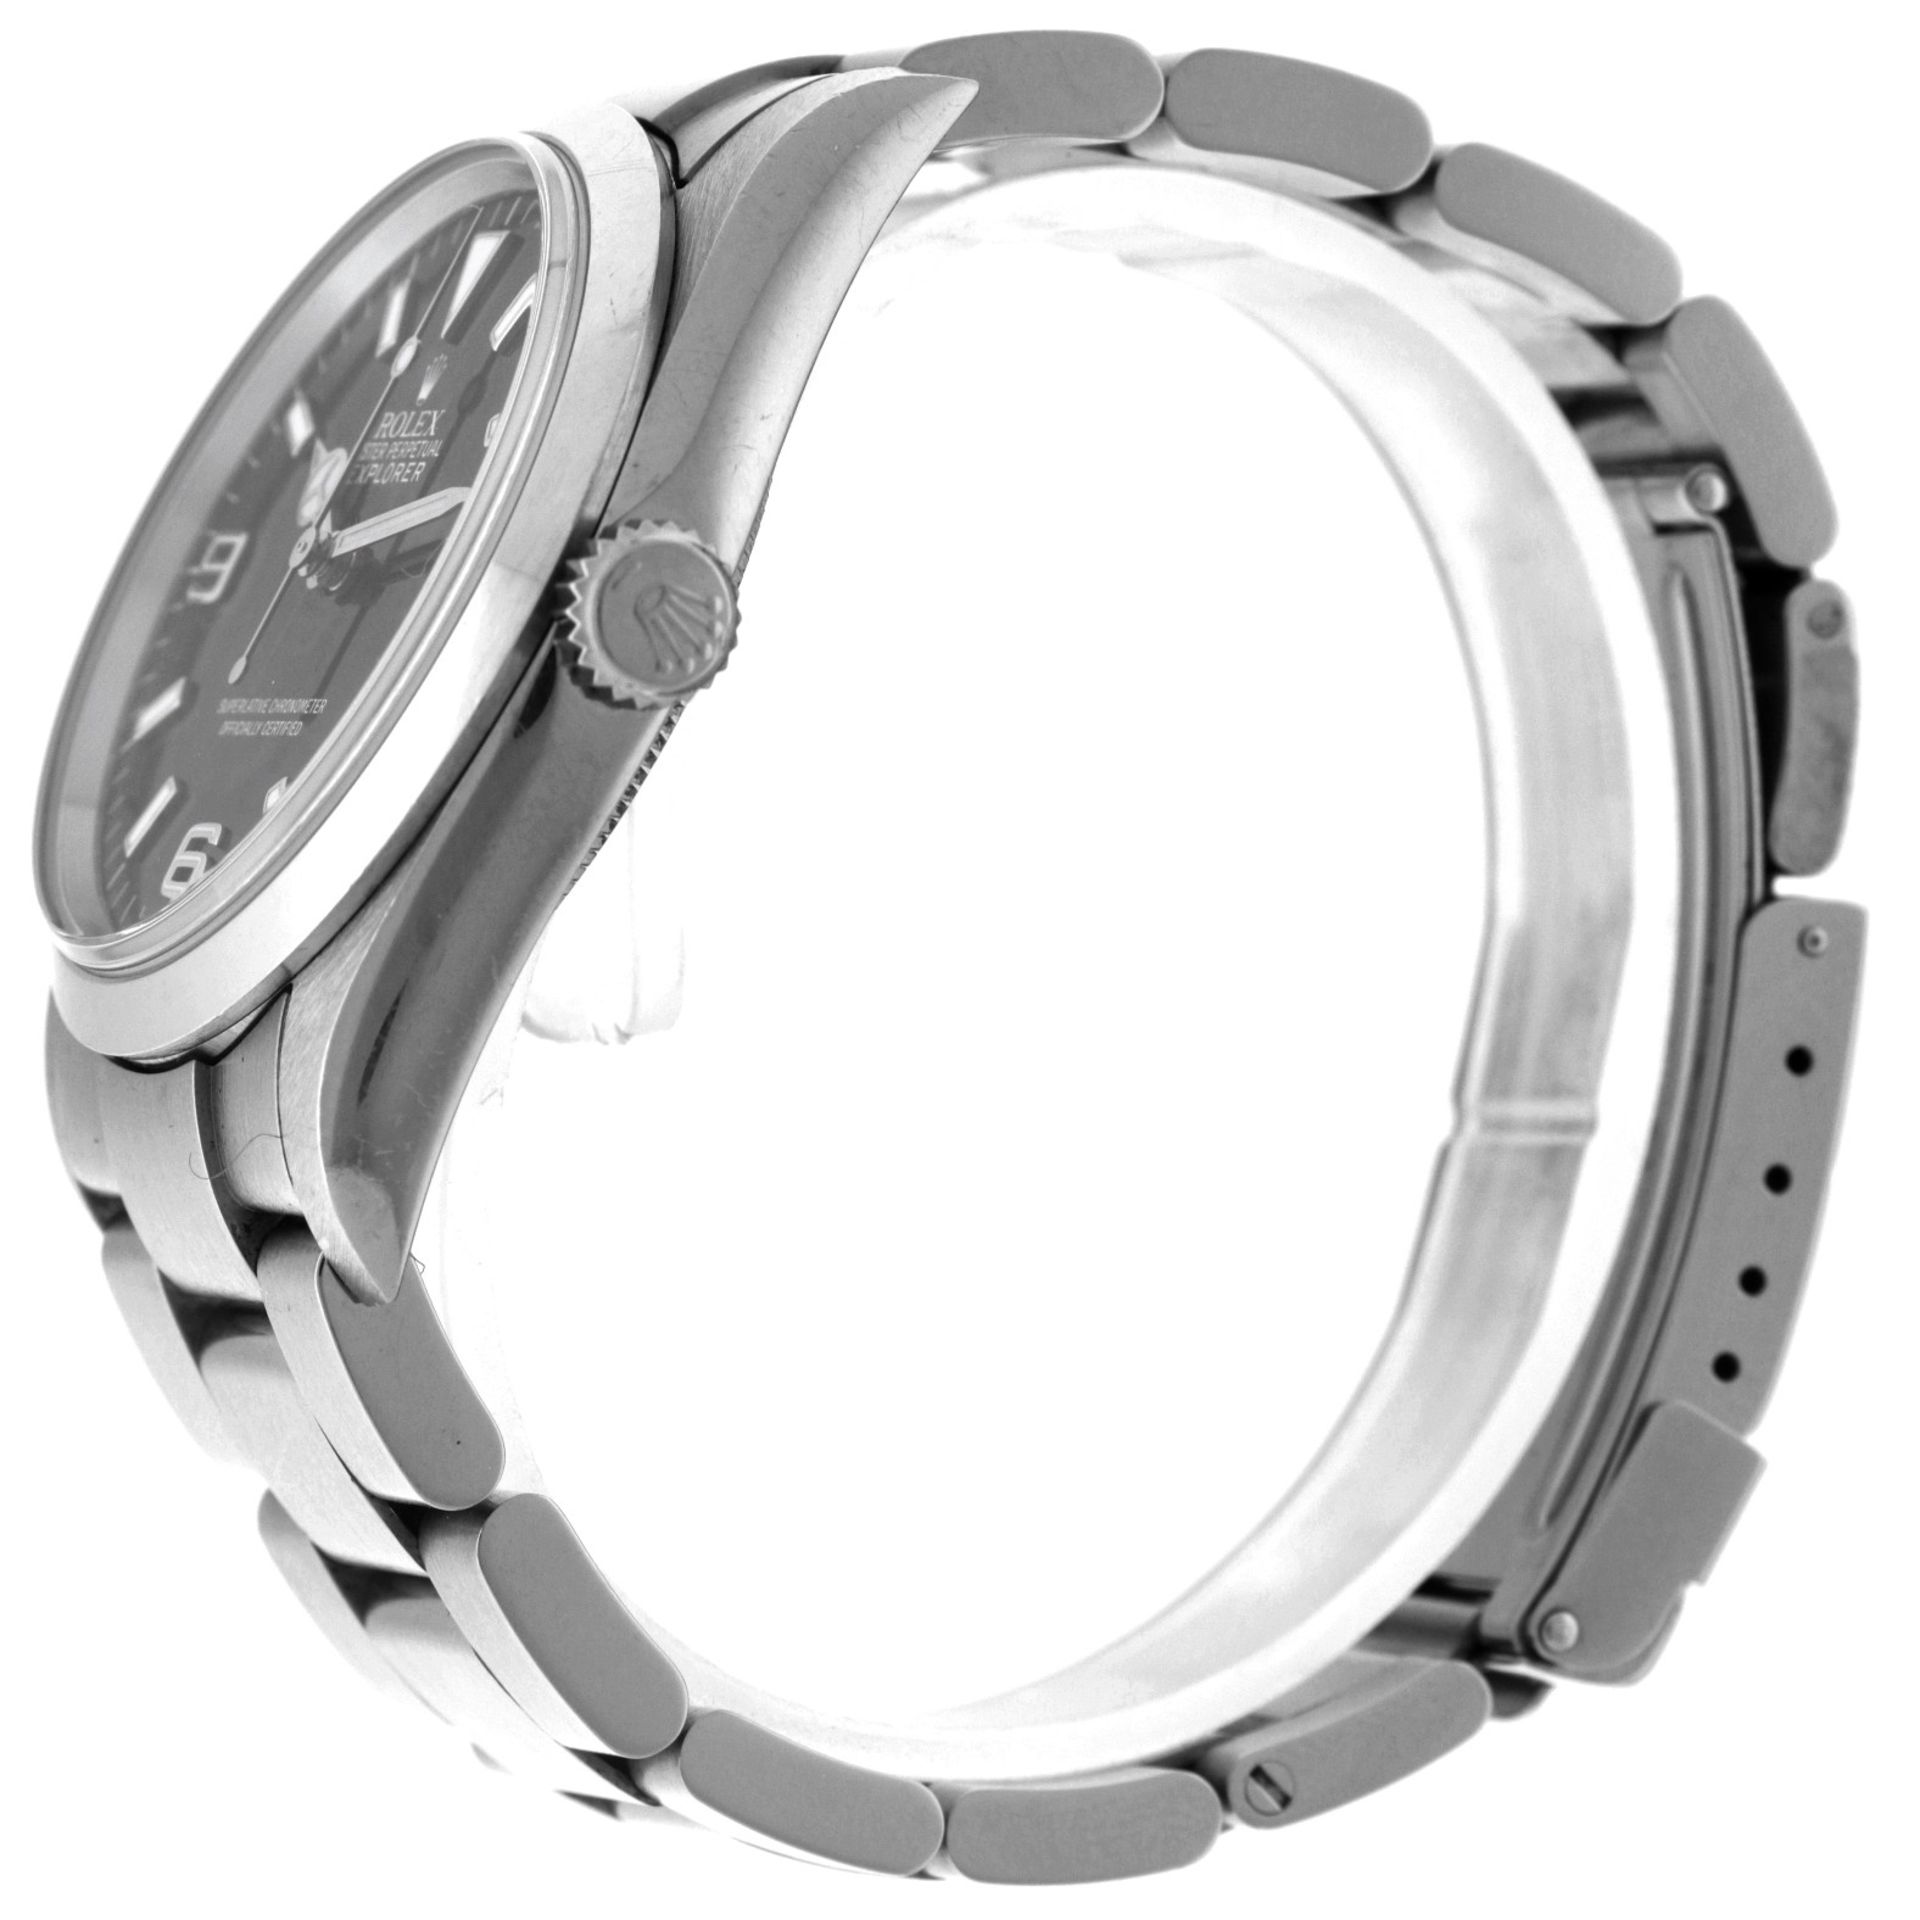 No Reserve - Rolex Explorer 114270 - Men's watch - 2006. - Image 5 of 6